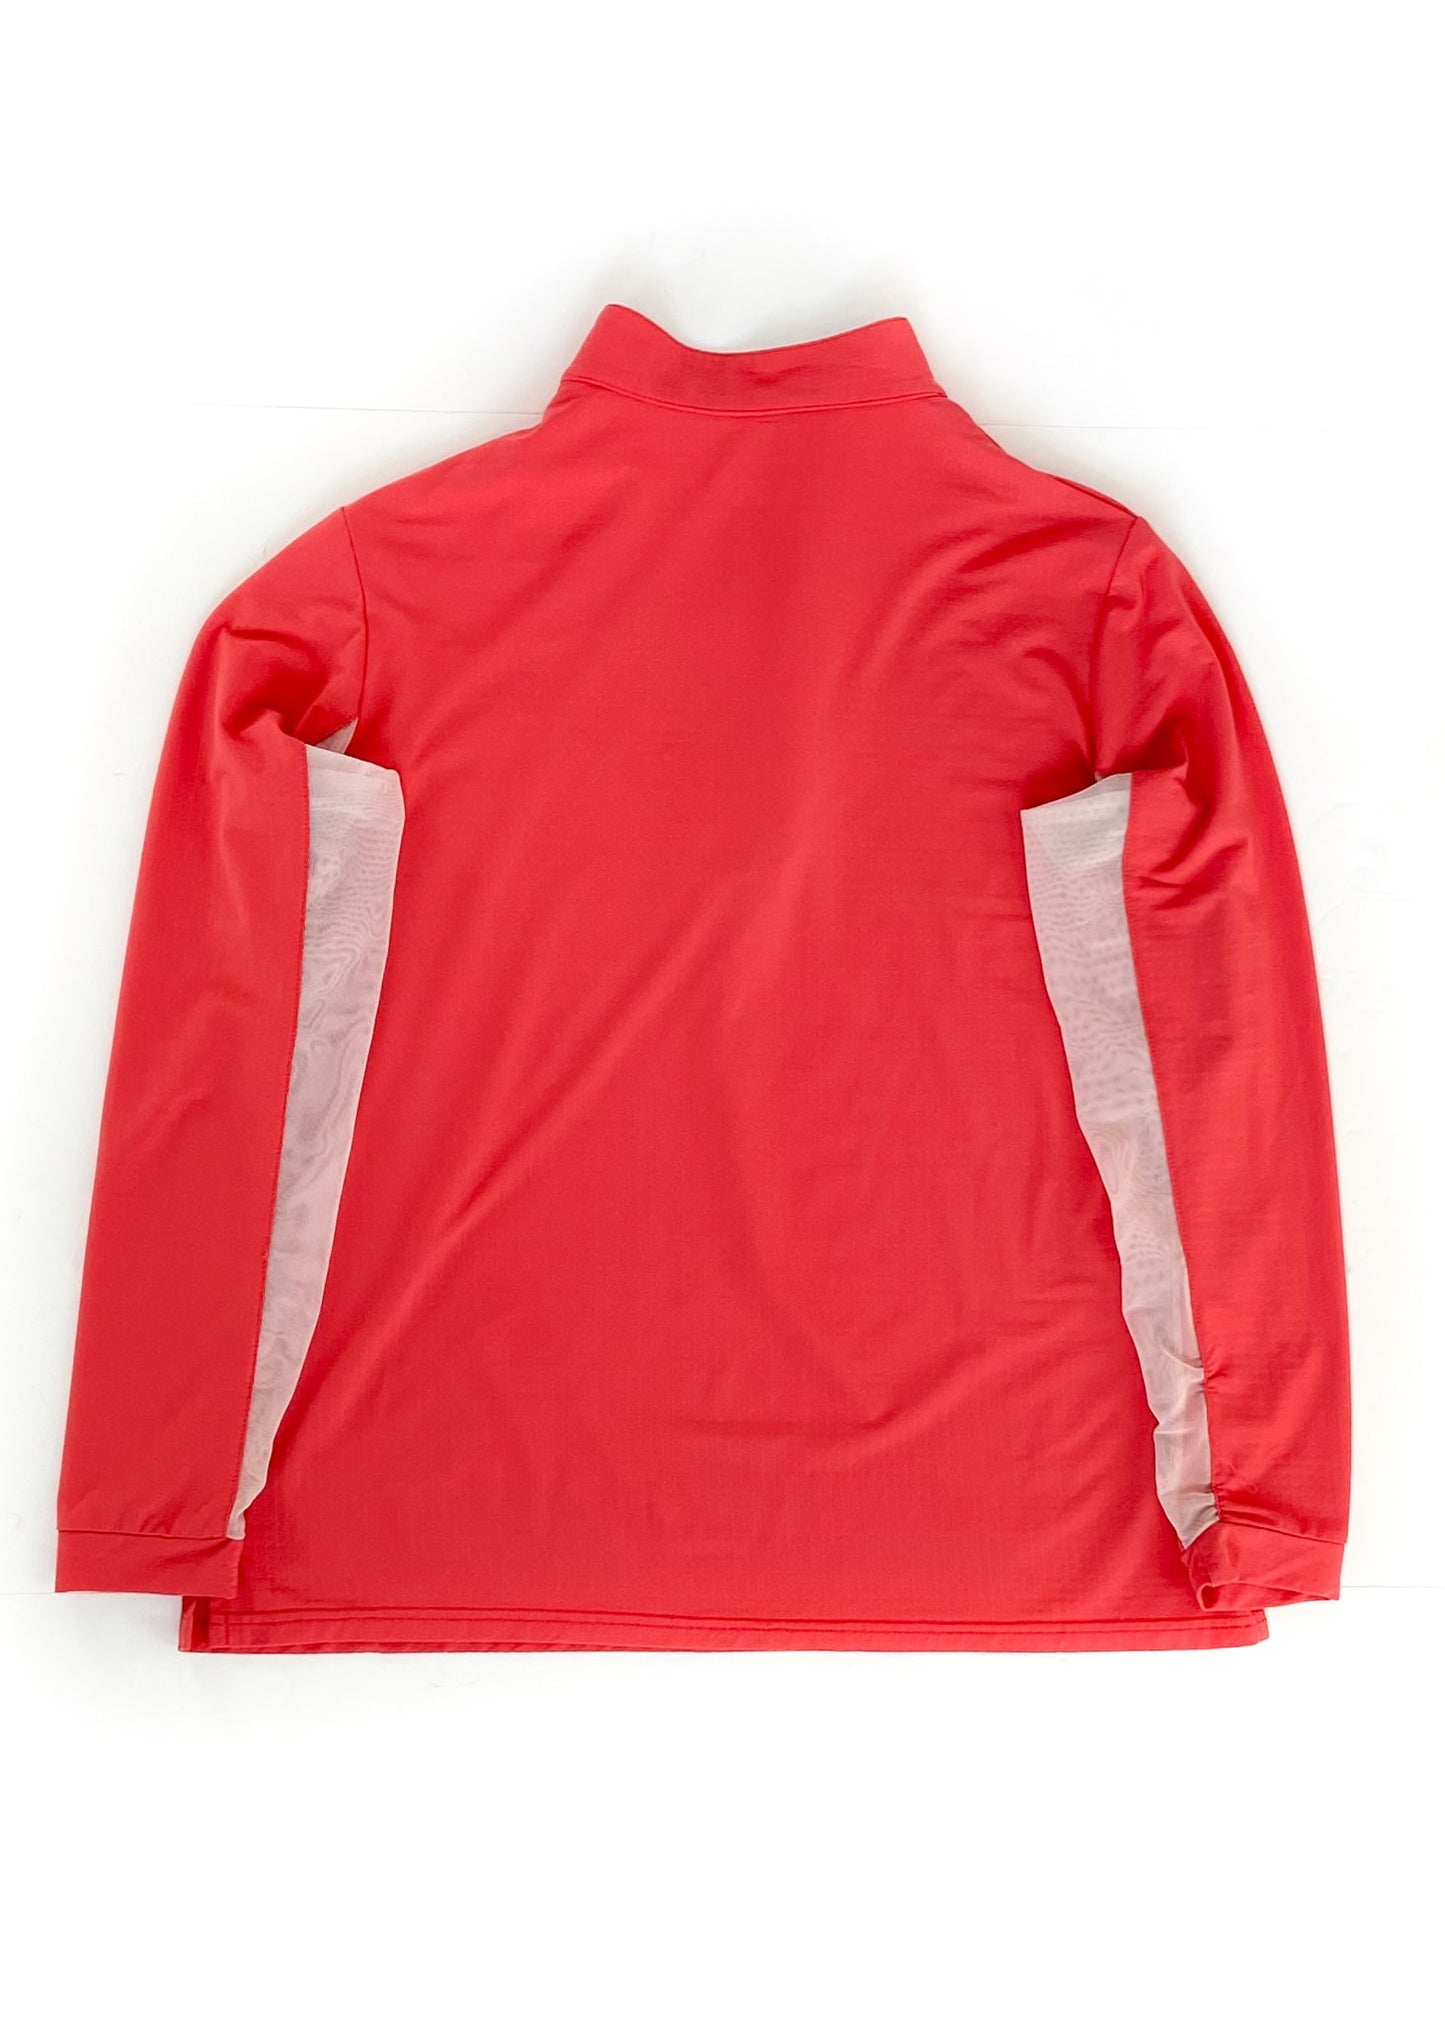 EIS Long Sleeve Sun Shirt - Coral - Women's XL